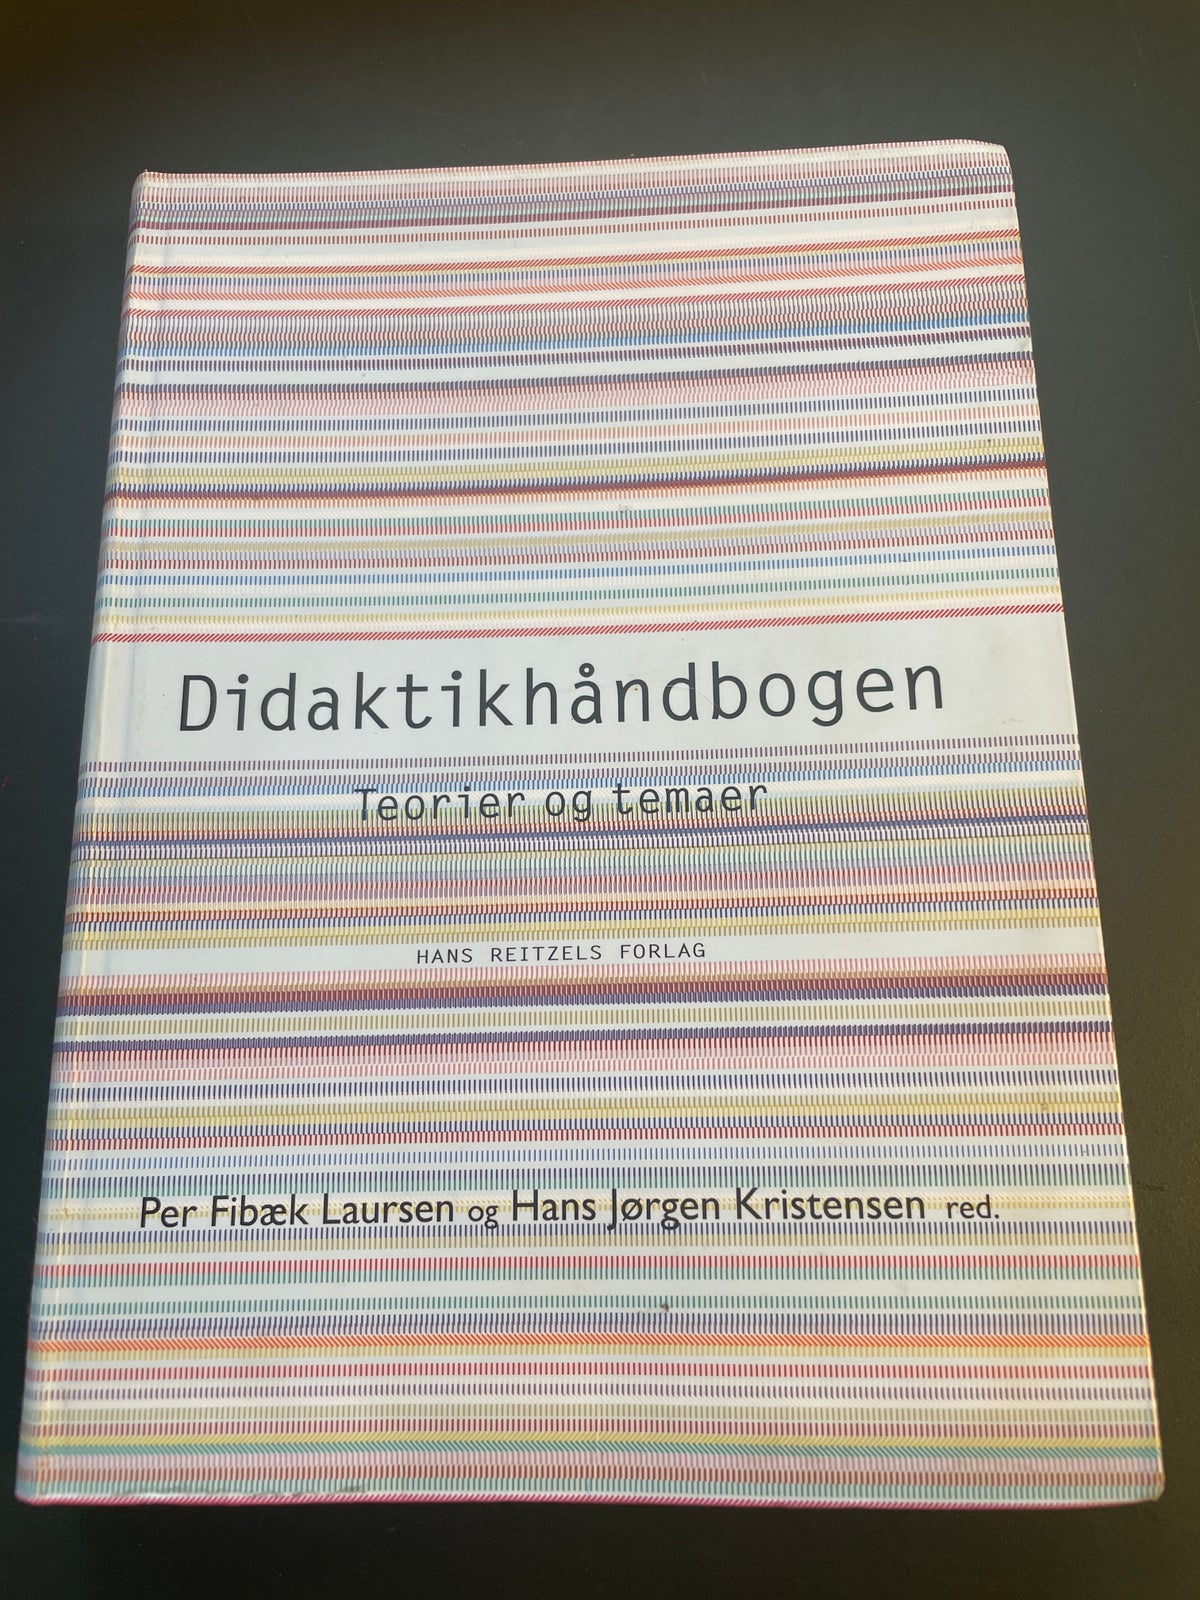 Didaktikhåndbogen, Per Fibæk Laursen & Hans Jørgen